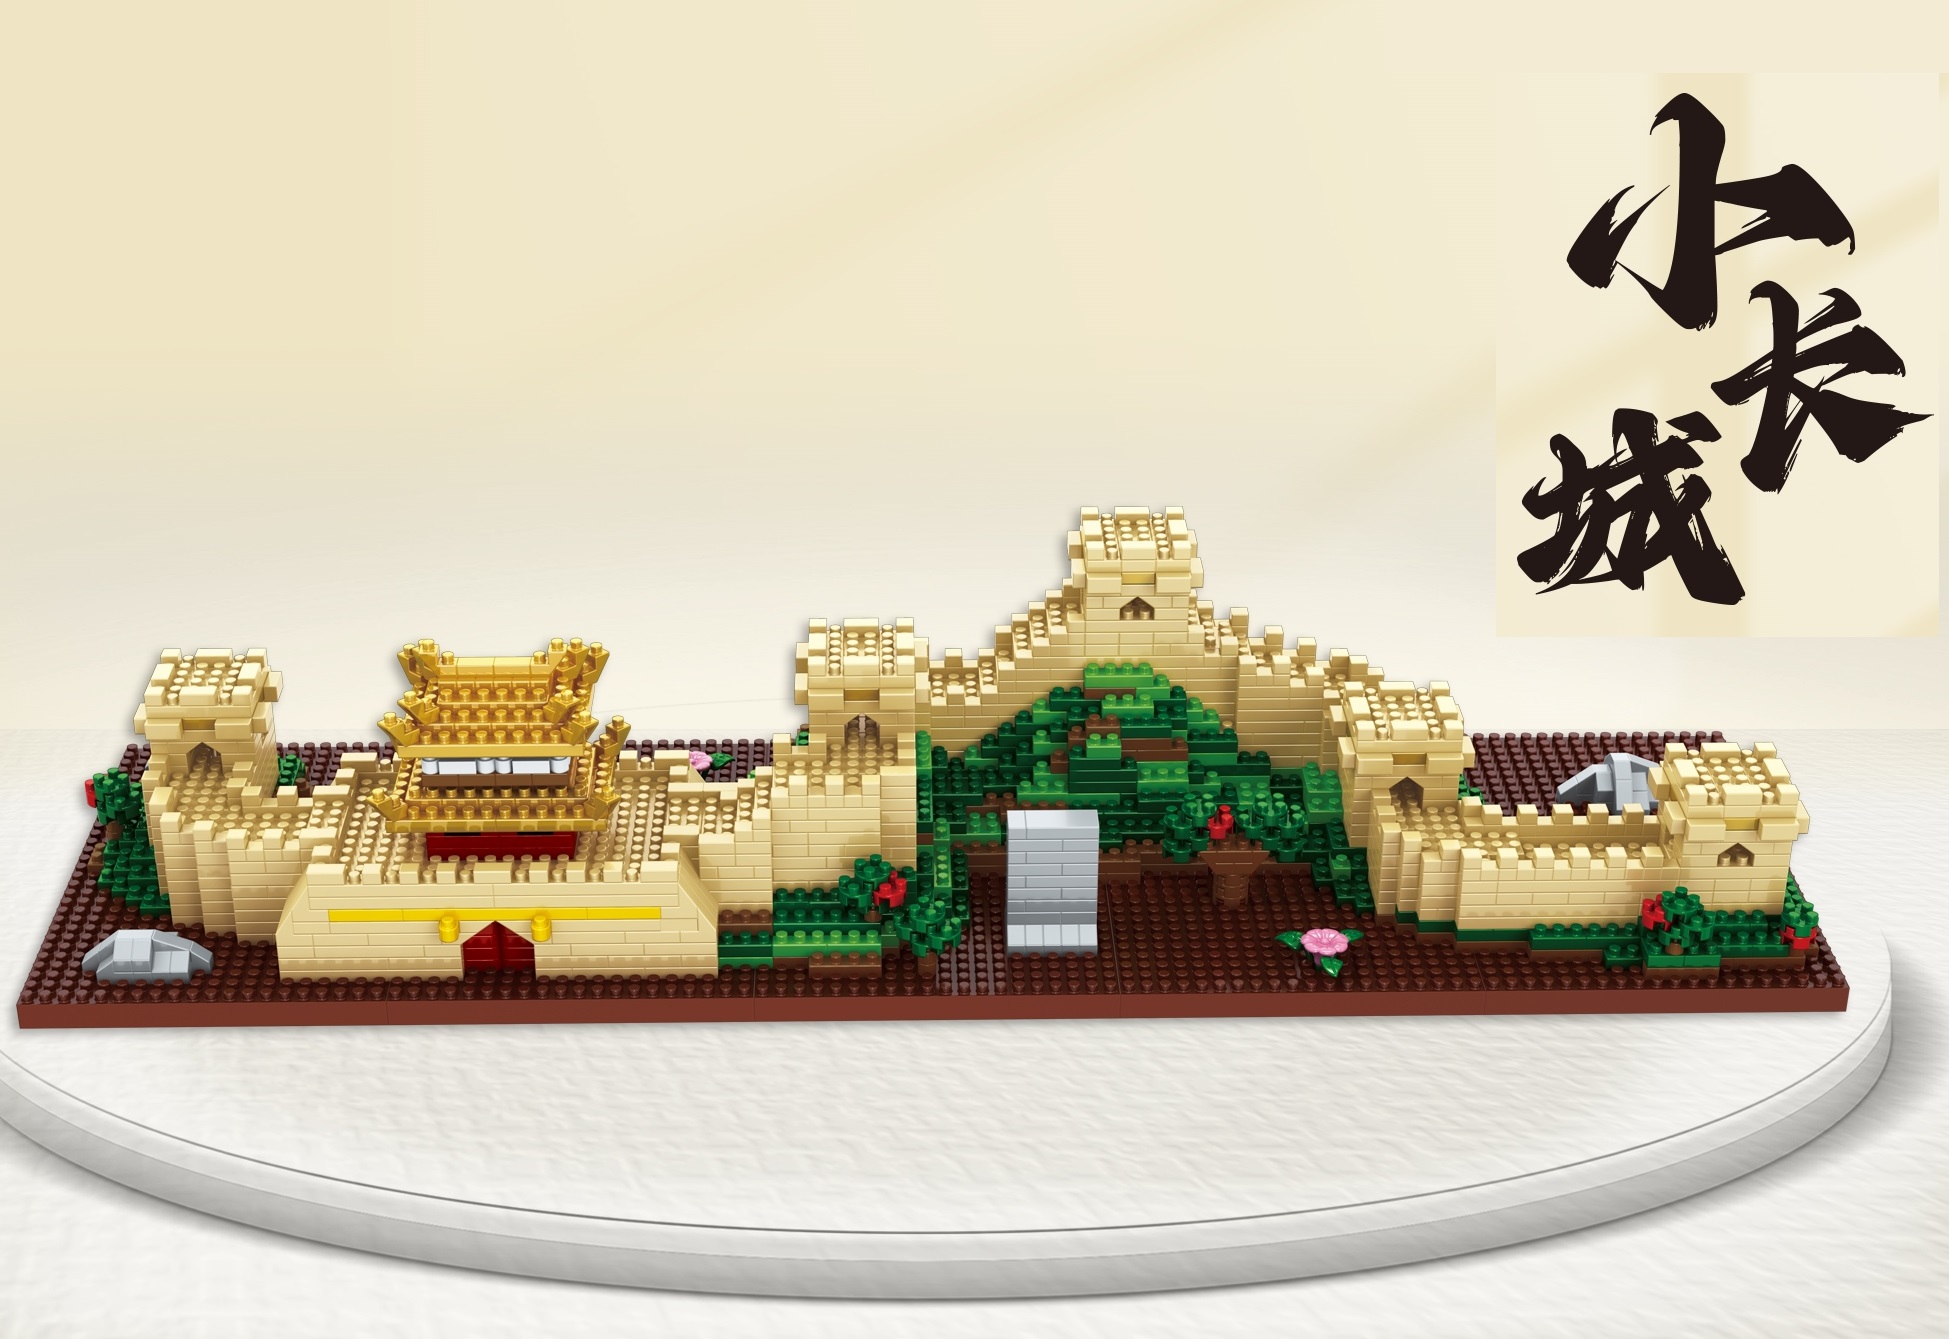 Конструктор 3Д из миниблоков DAIA Великая Китайская стена, 2288 дет - DI668-9 великая китайская стена